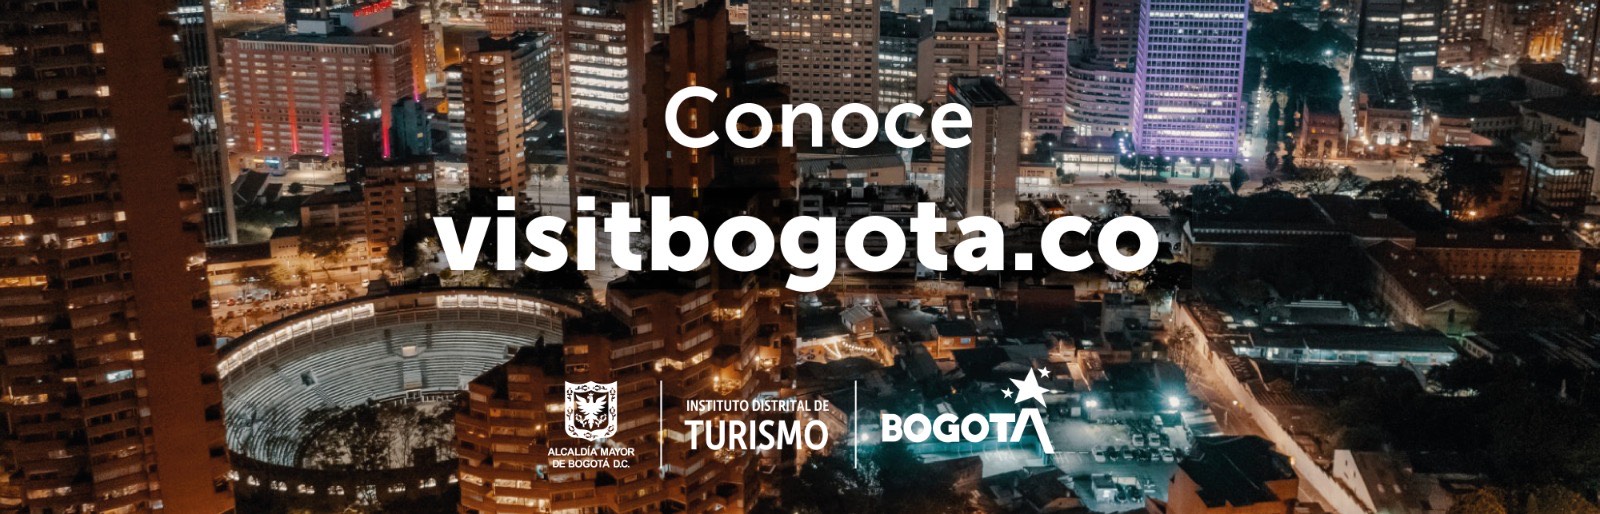 Visit Bogotá